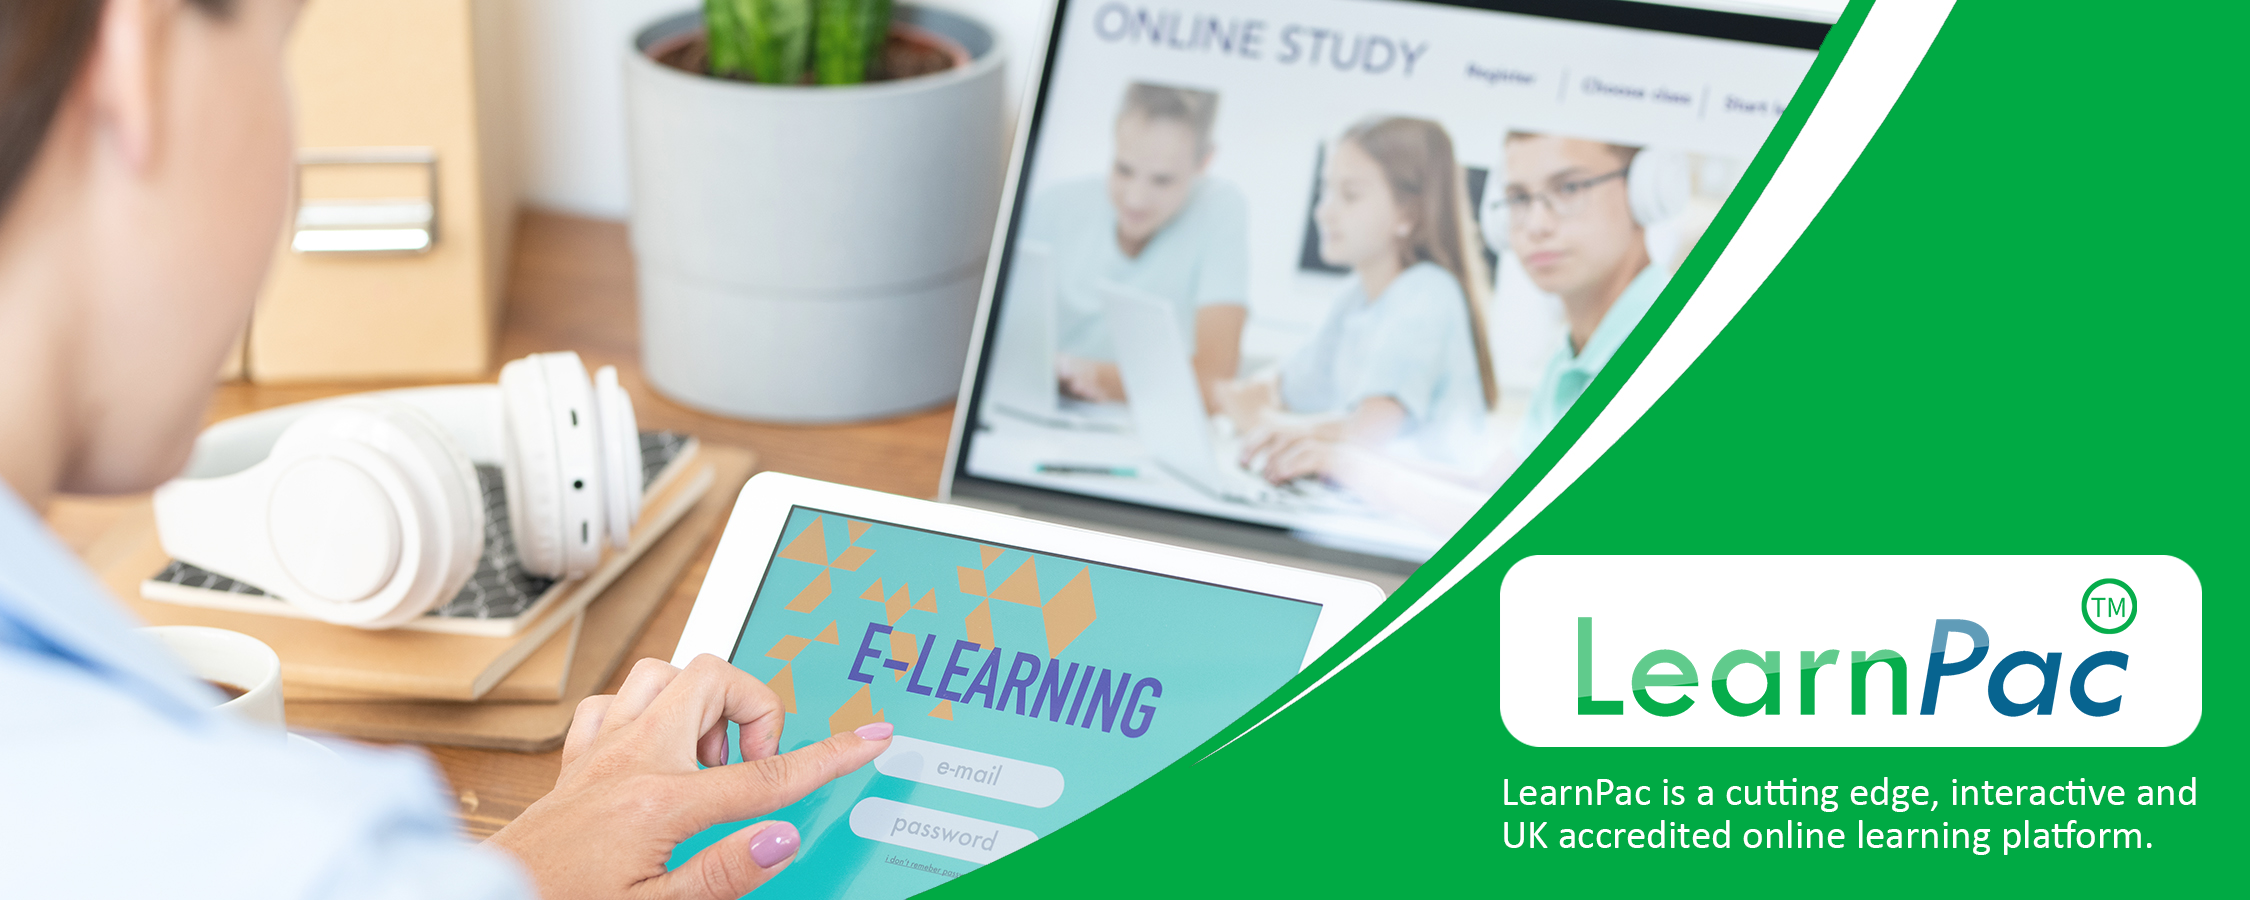 Sepsis Awareness Training - Online Learning Courses - E-Learning Courses - LearnPac Systems UK -